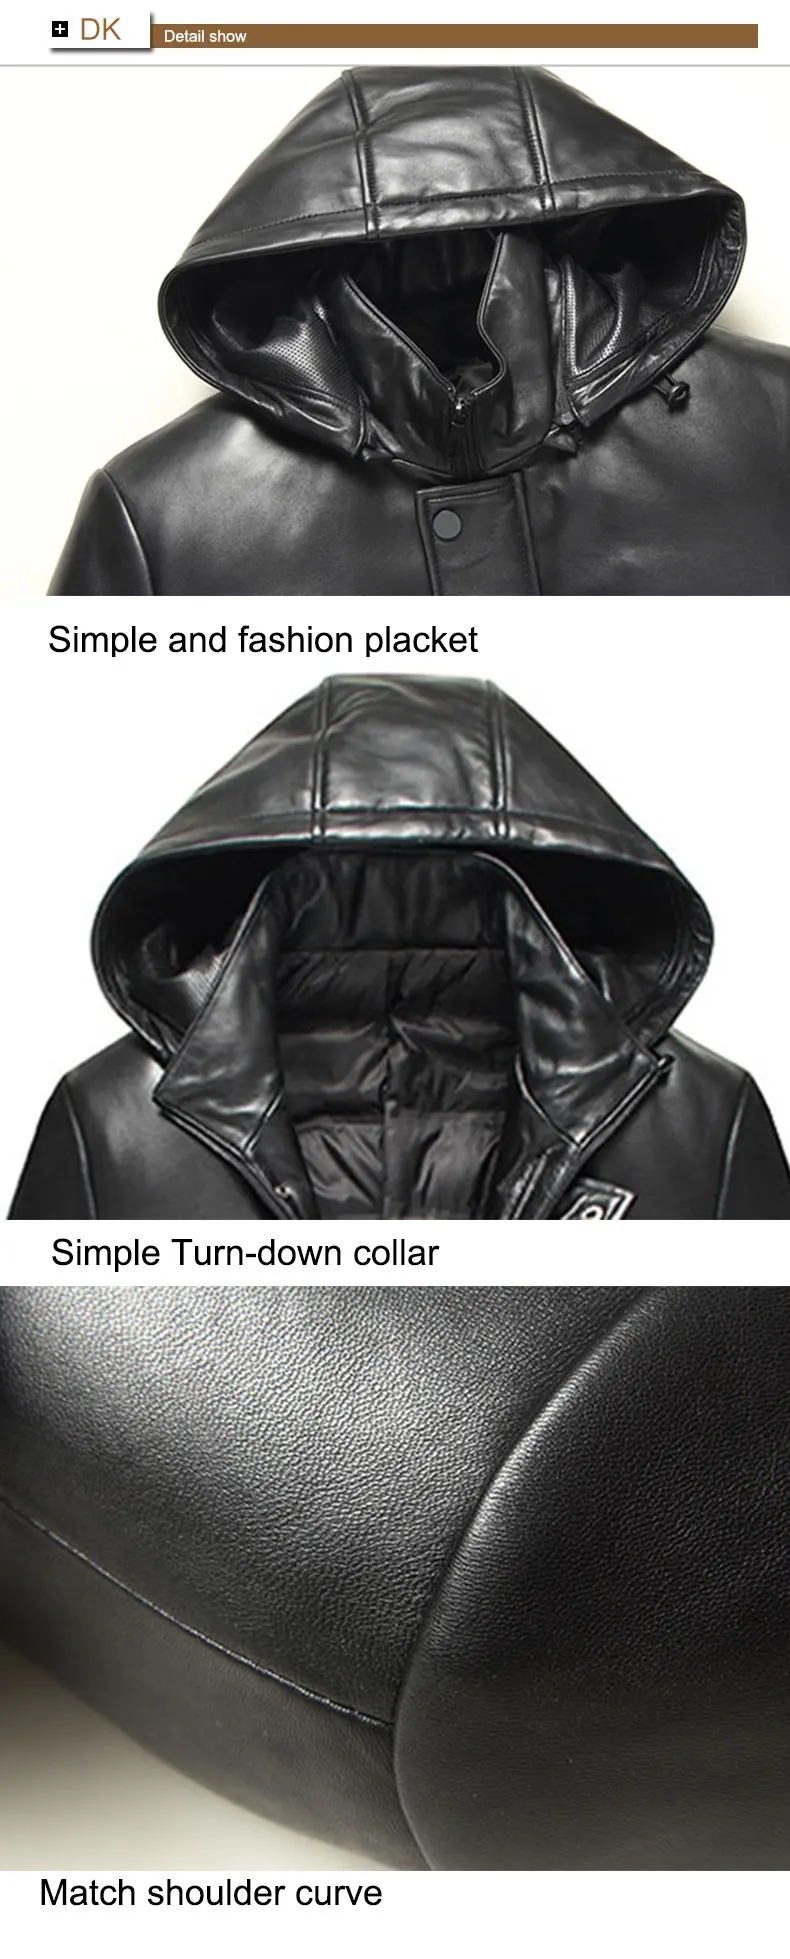 Зимнее кожаное пуховое пальто с капюшоном, отстегивающийся утиный пух, дизайн ласточкин хвост, Натуральная овечья кожа, брендовая куртка черного цвета, 71C7131